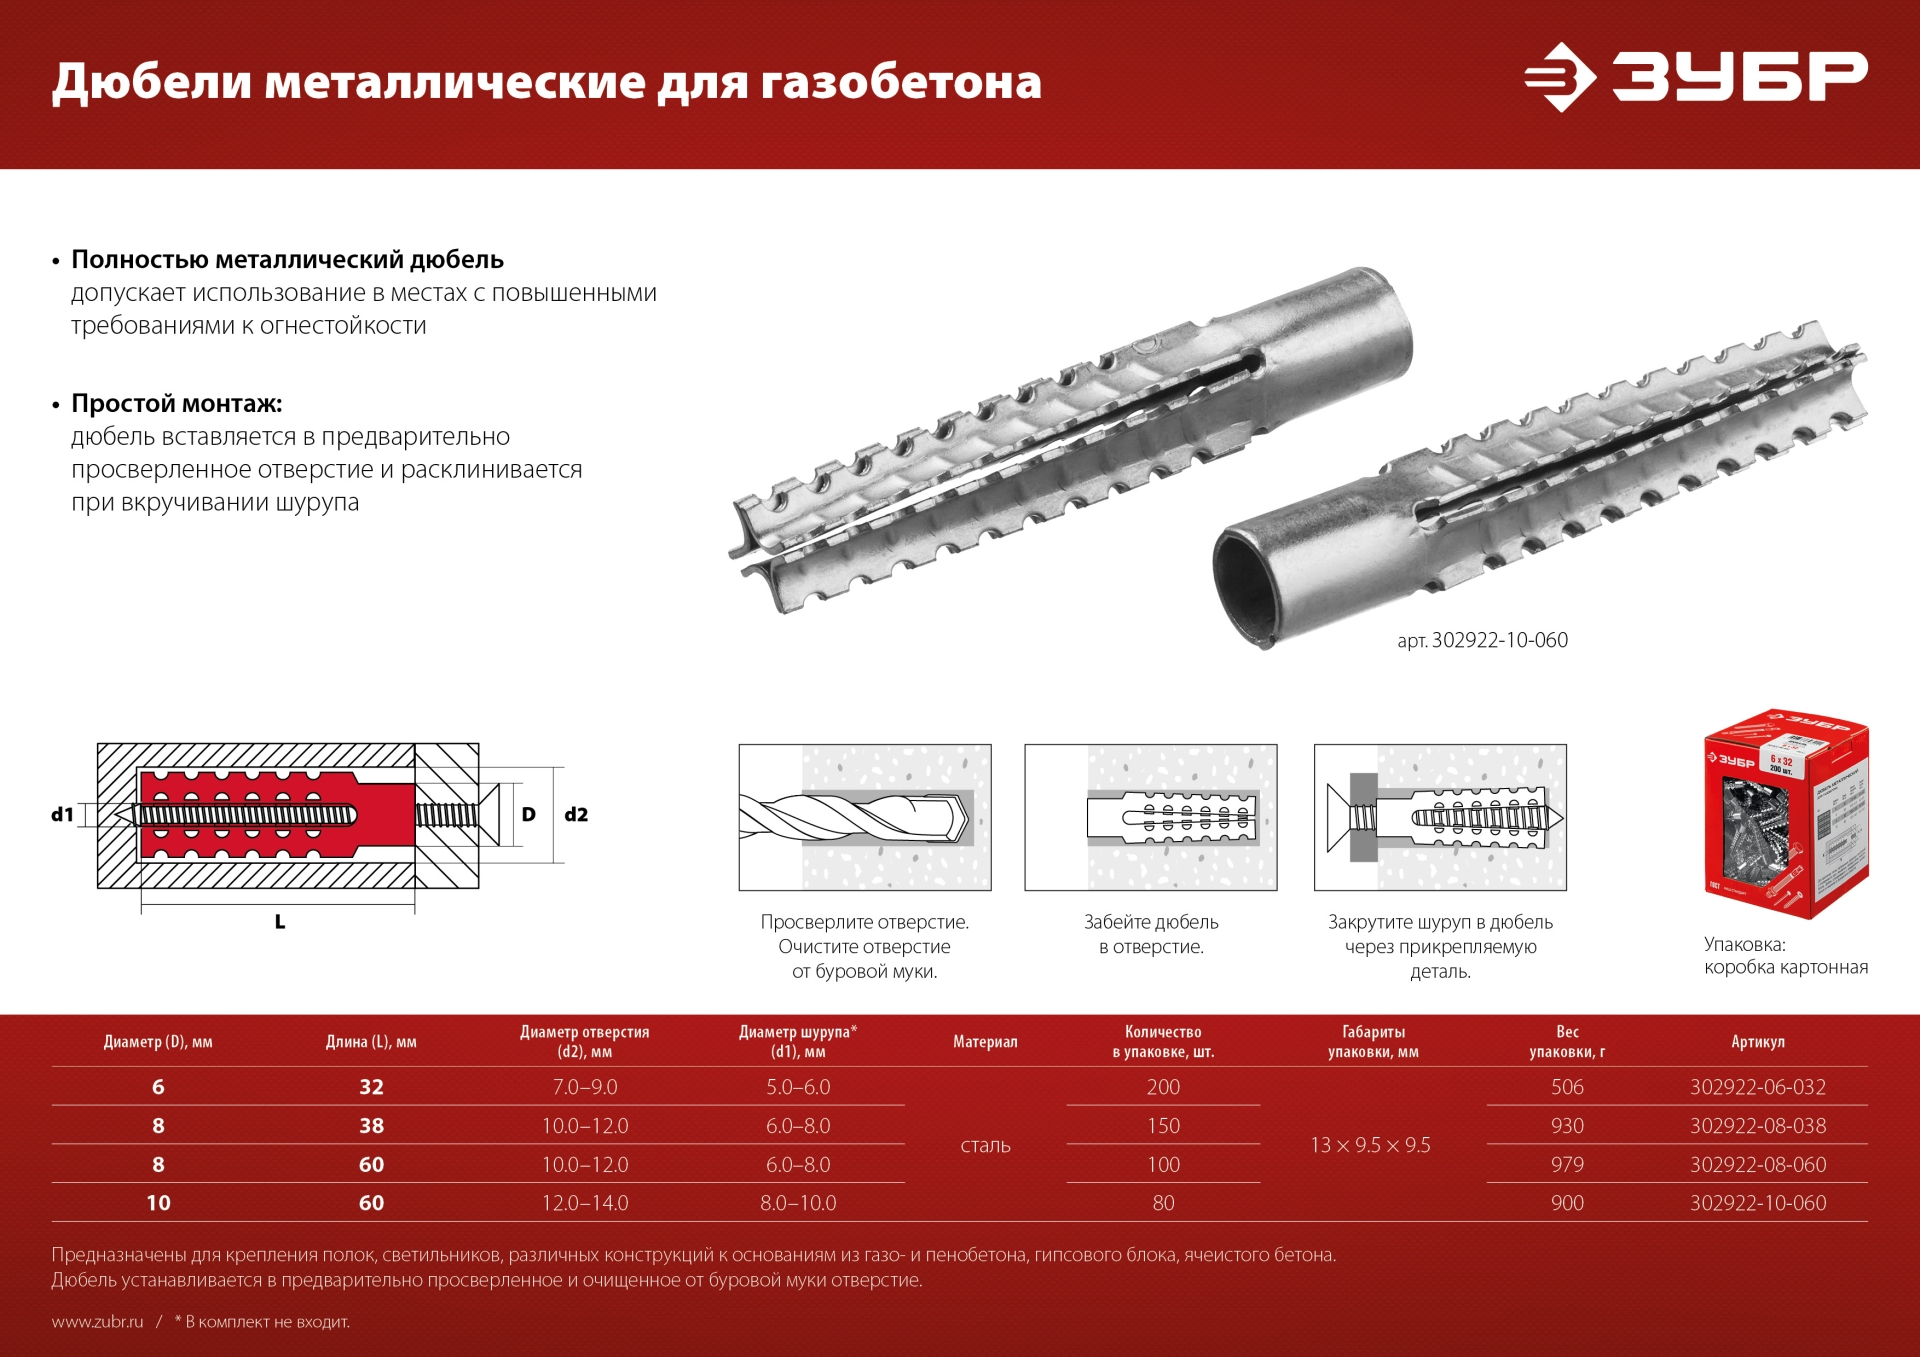 ЗУБР 8 х 60 мм, 100 шт, металлический дюбель для газобетона (302922-08-060)